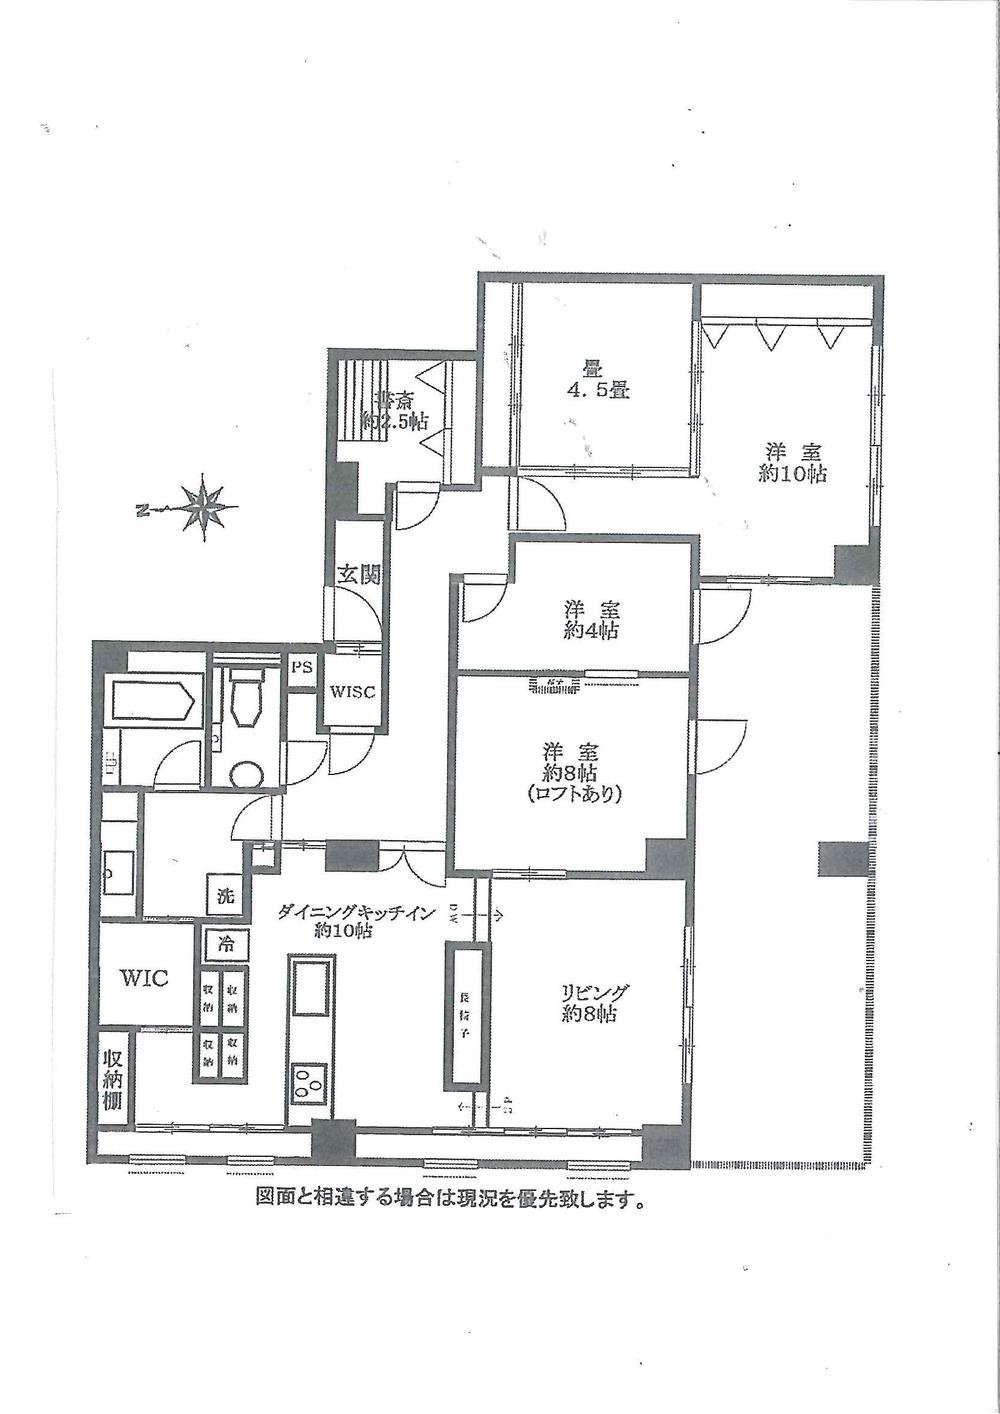 Floor plan. 3LDK + S (storeroom), Price 72,800,000 yen, Footprint 112.82 sq m